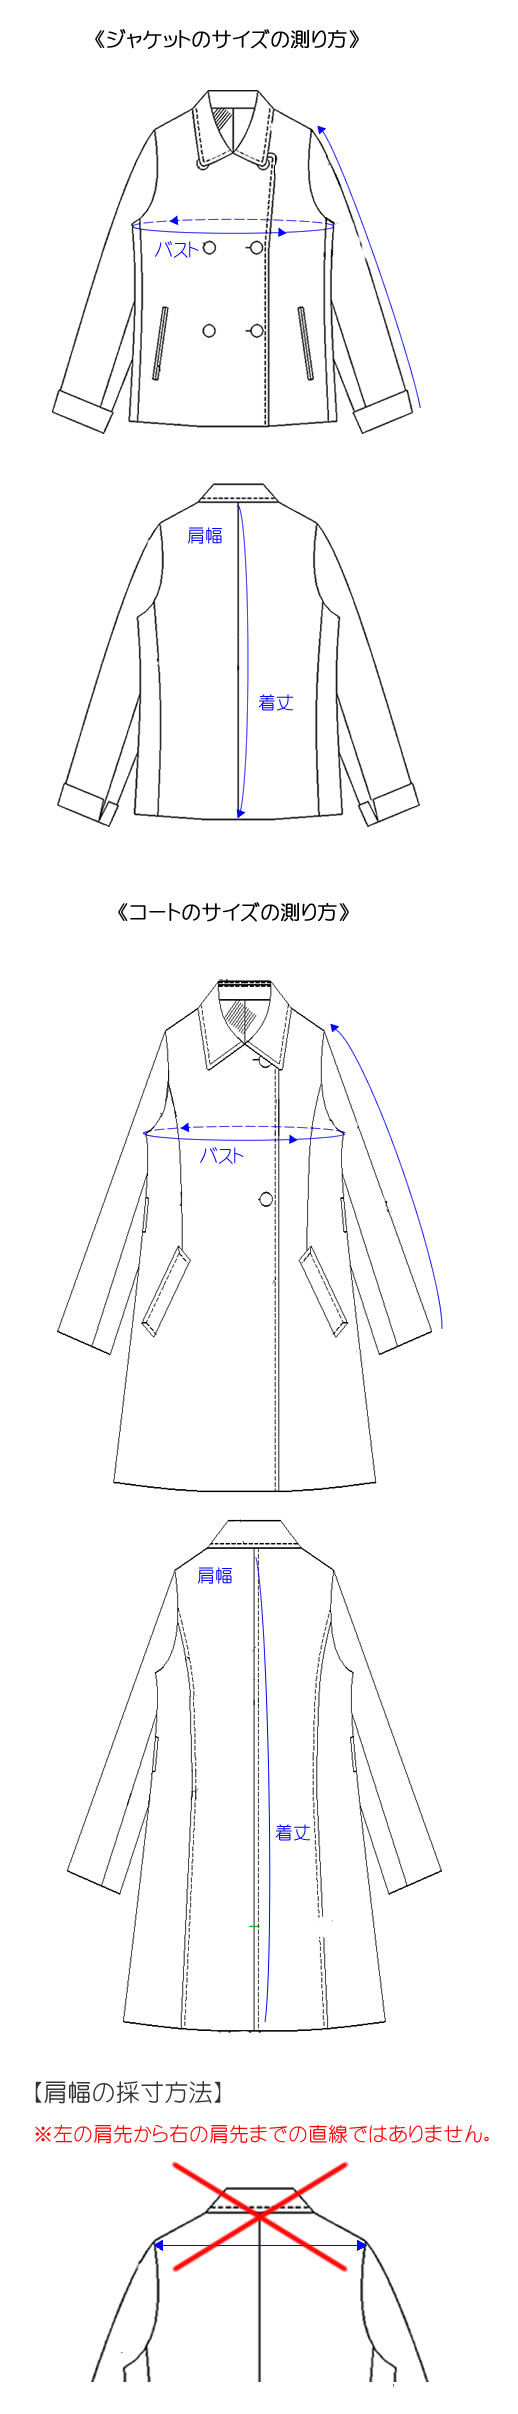 ジャケット･コートサイズの測り方